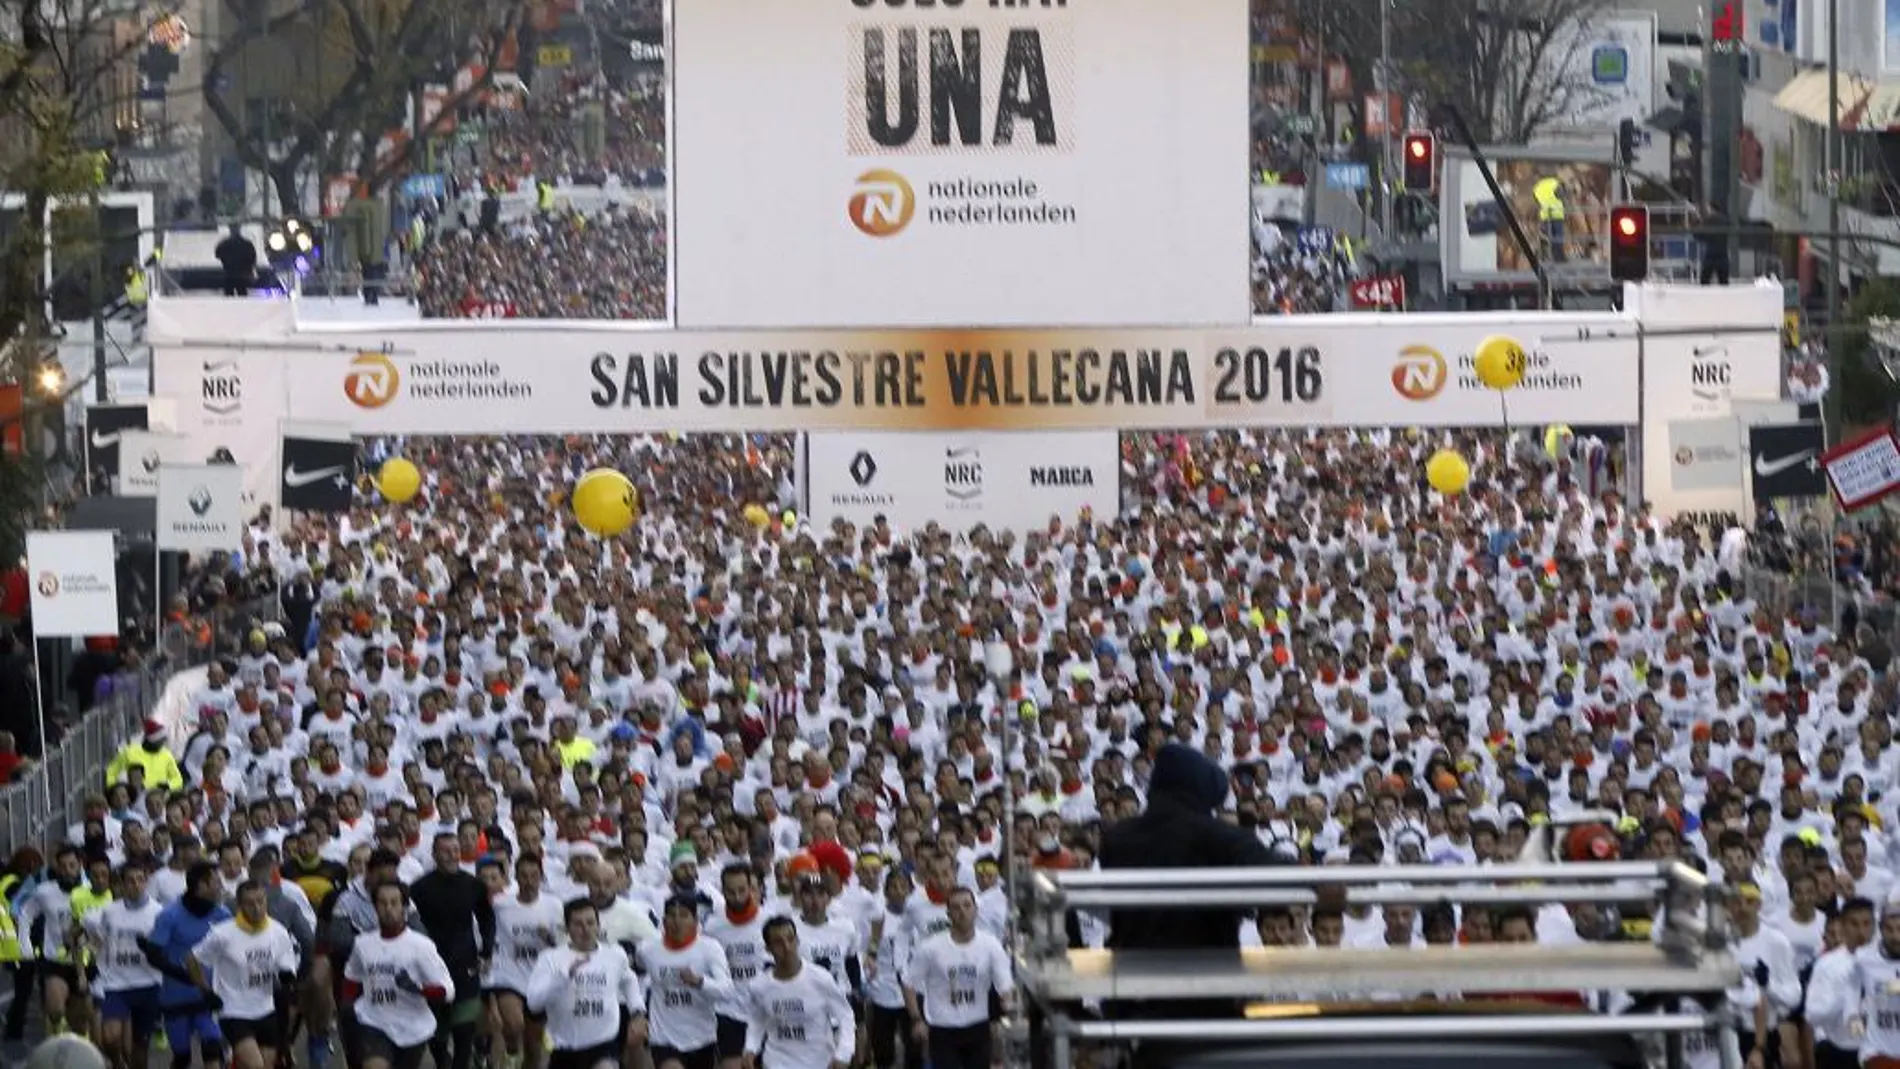 Vista general de la salida de los participantes en la carrera popular de la San Silvestre Vallecana desde el estadio Santiago Bernabeu